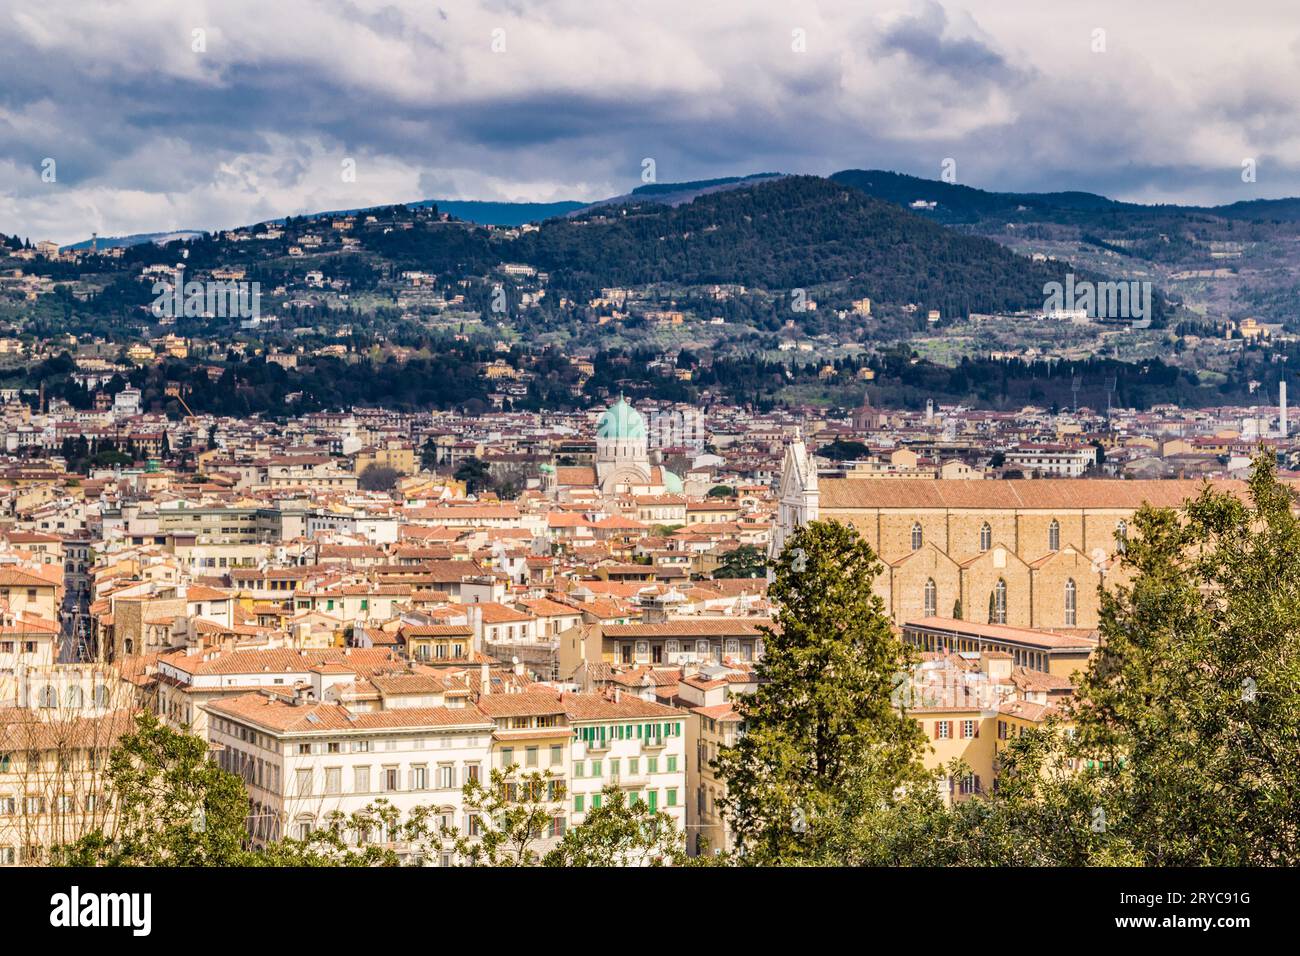 Vedute mozzafiato dei palazzi e delle chiese di Firenze Foto Stock